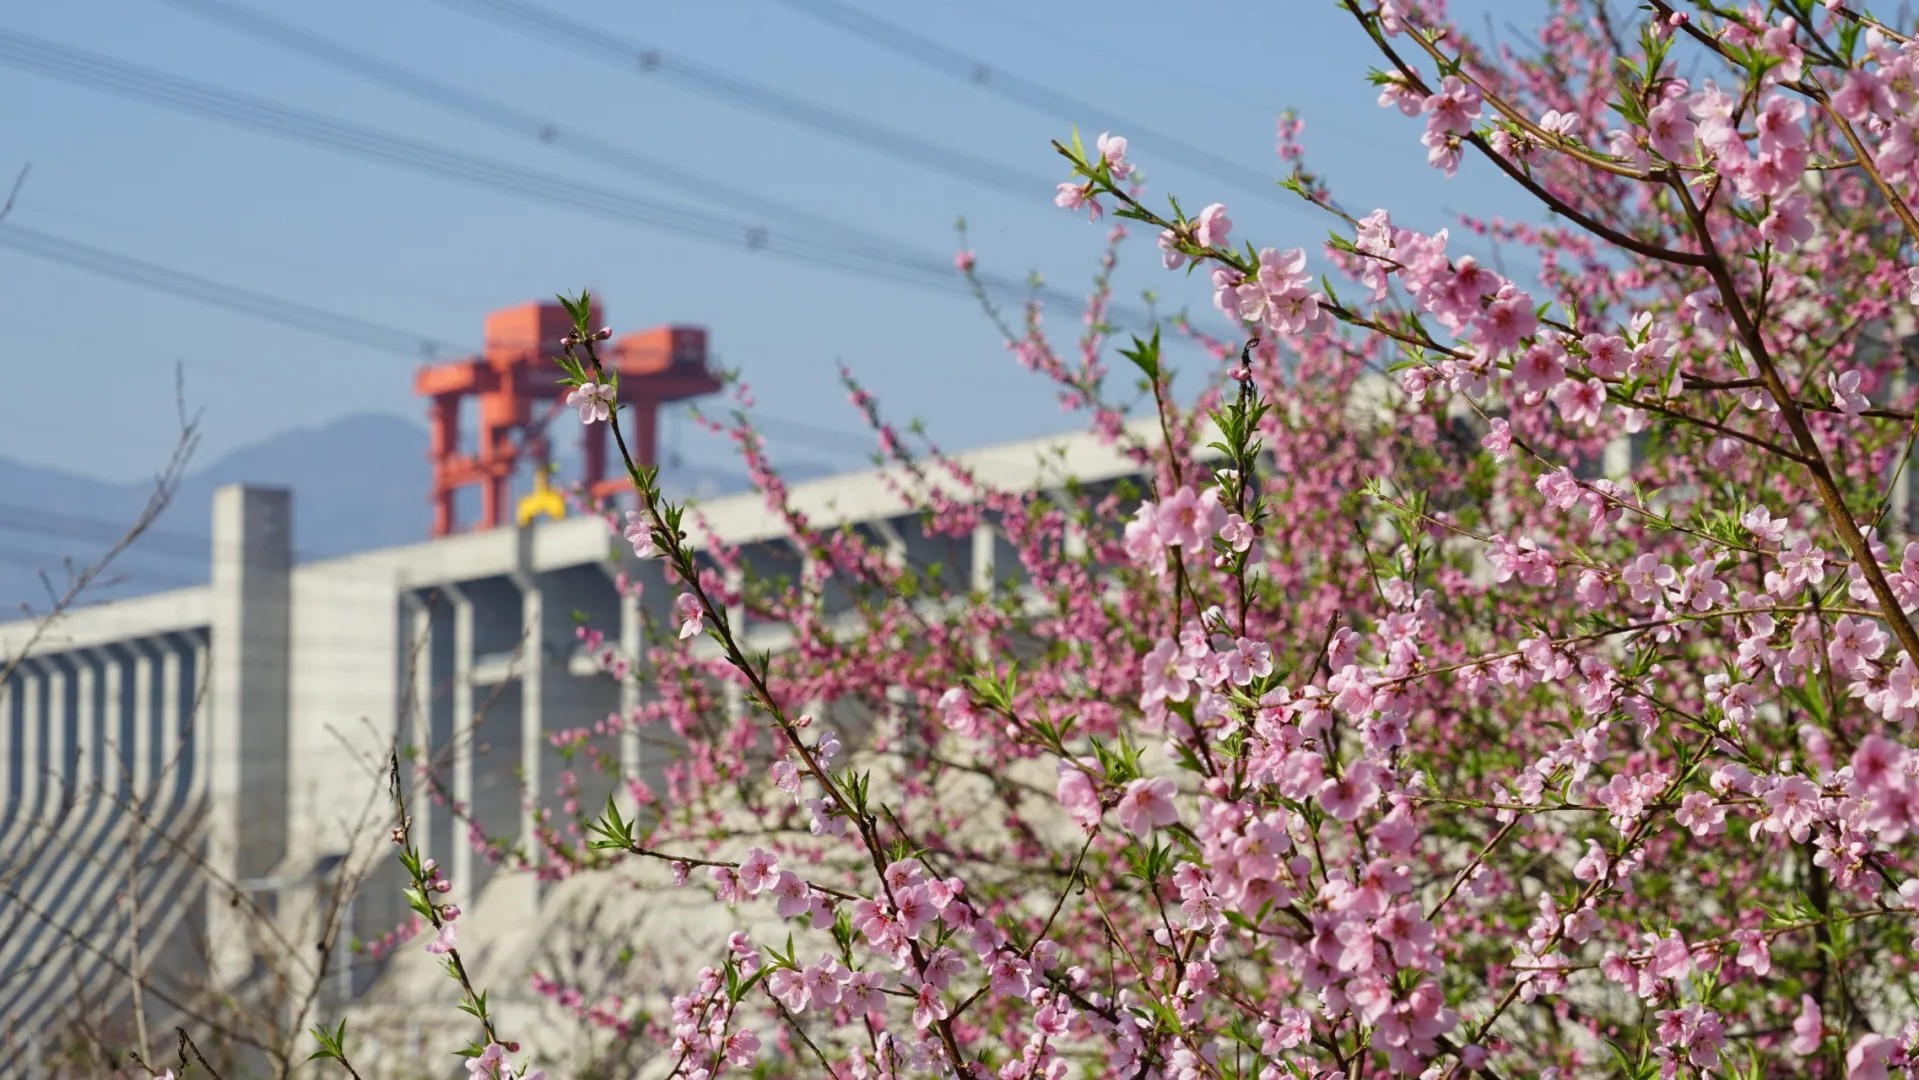 近期，世界最大水利枢纽三峡工程两岸各色山花开放，春意正浓。中国三峡集团的摄影爱好者纷纷定格这美好的瞬间。（朱静霞 摄）